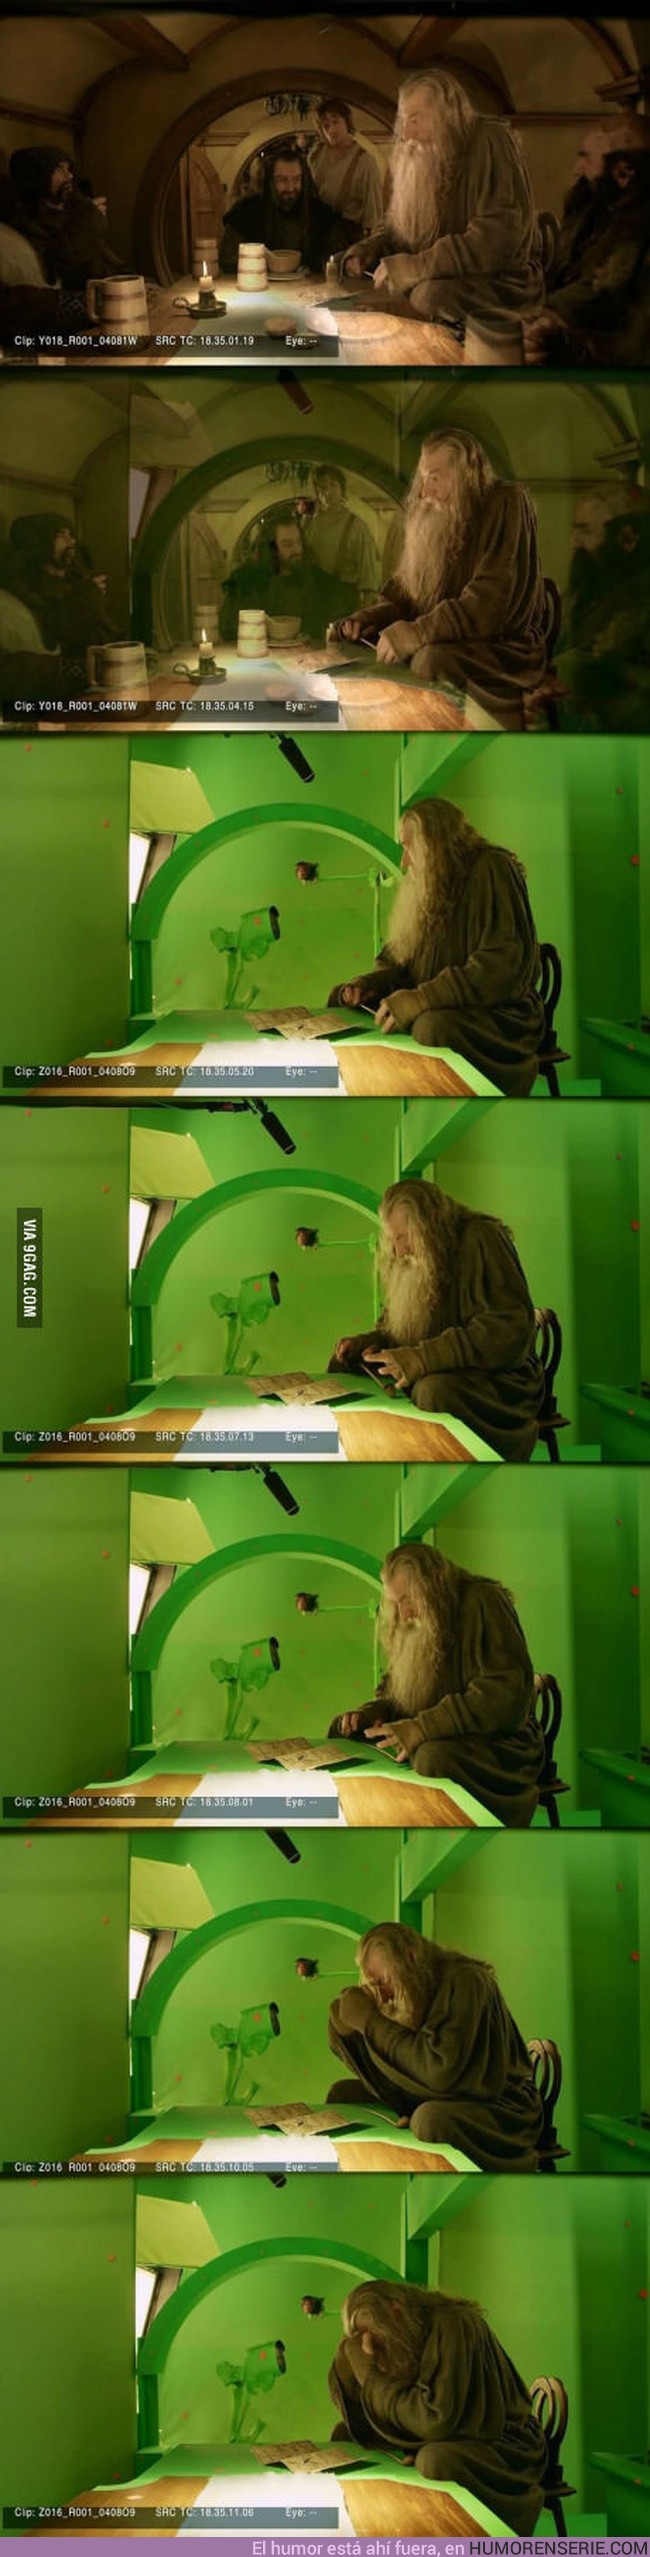 5760 - Gandalf cree que tiene amigos pero todo forma parte de su imaginación :(